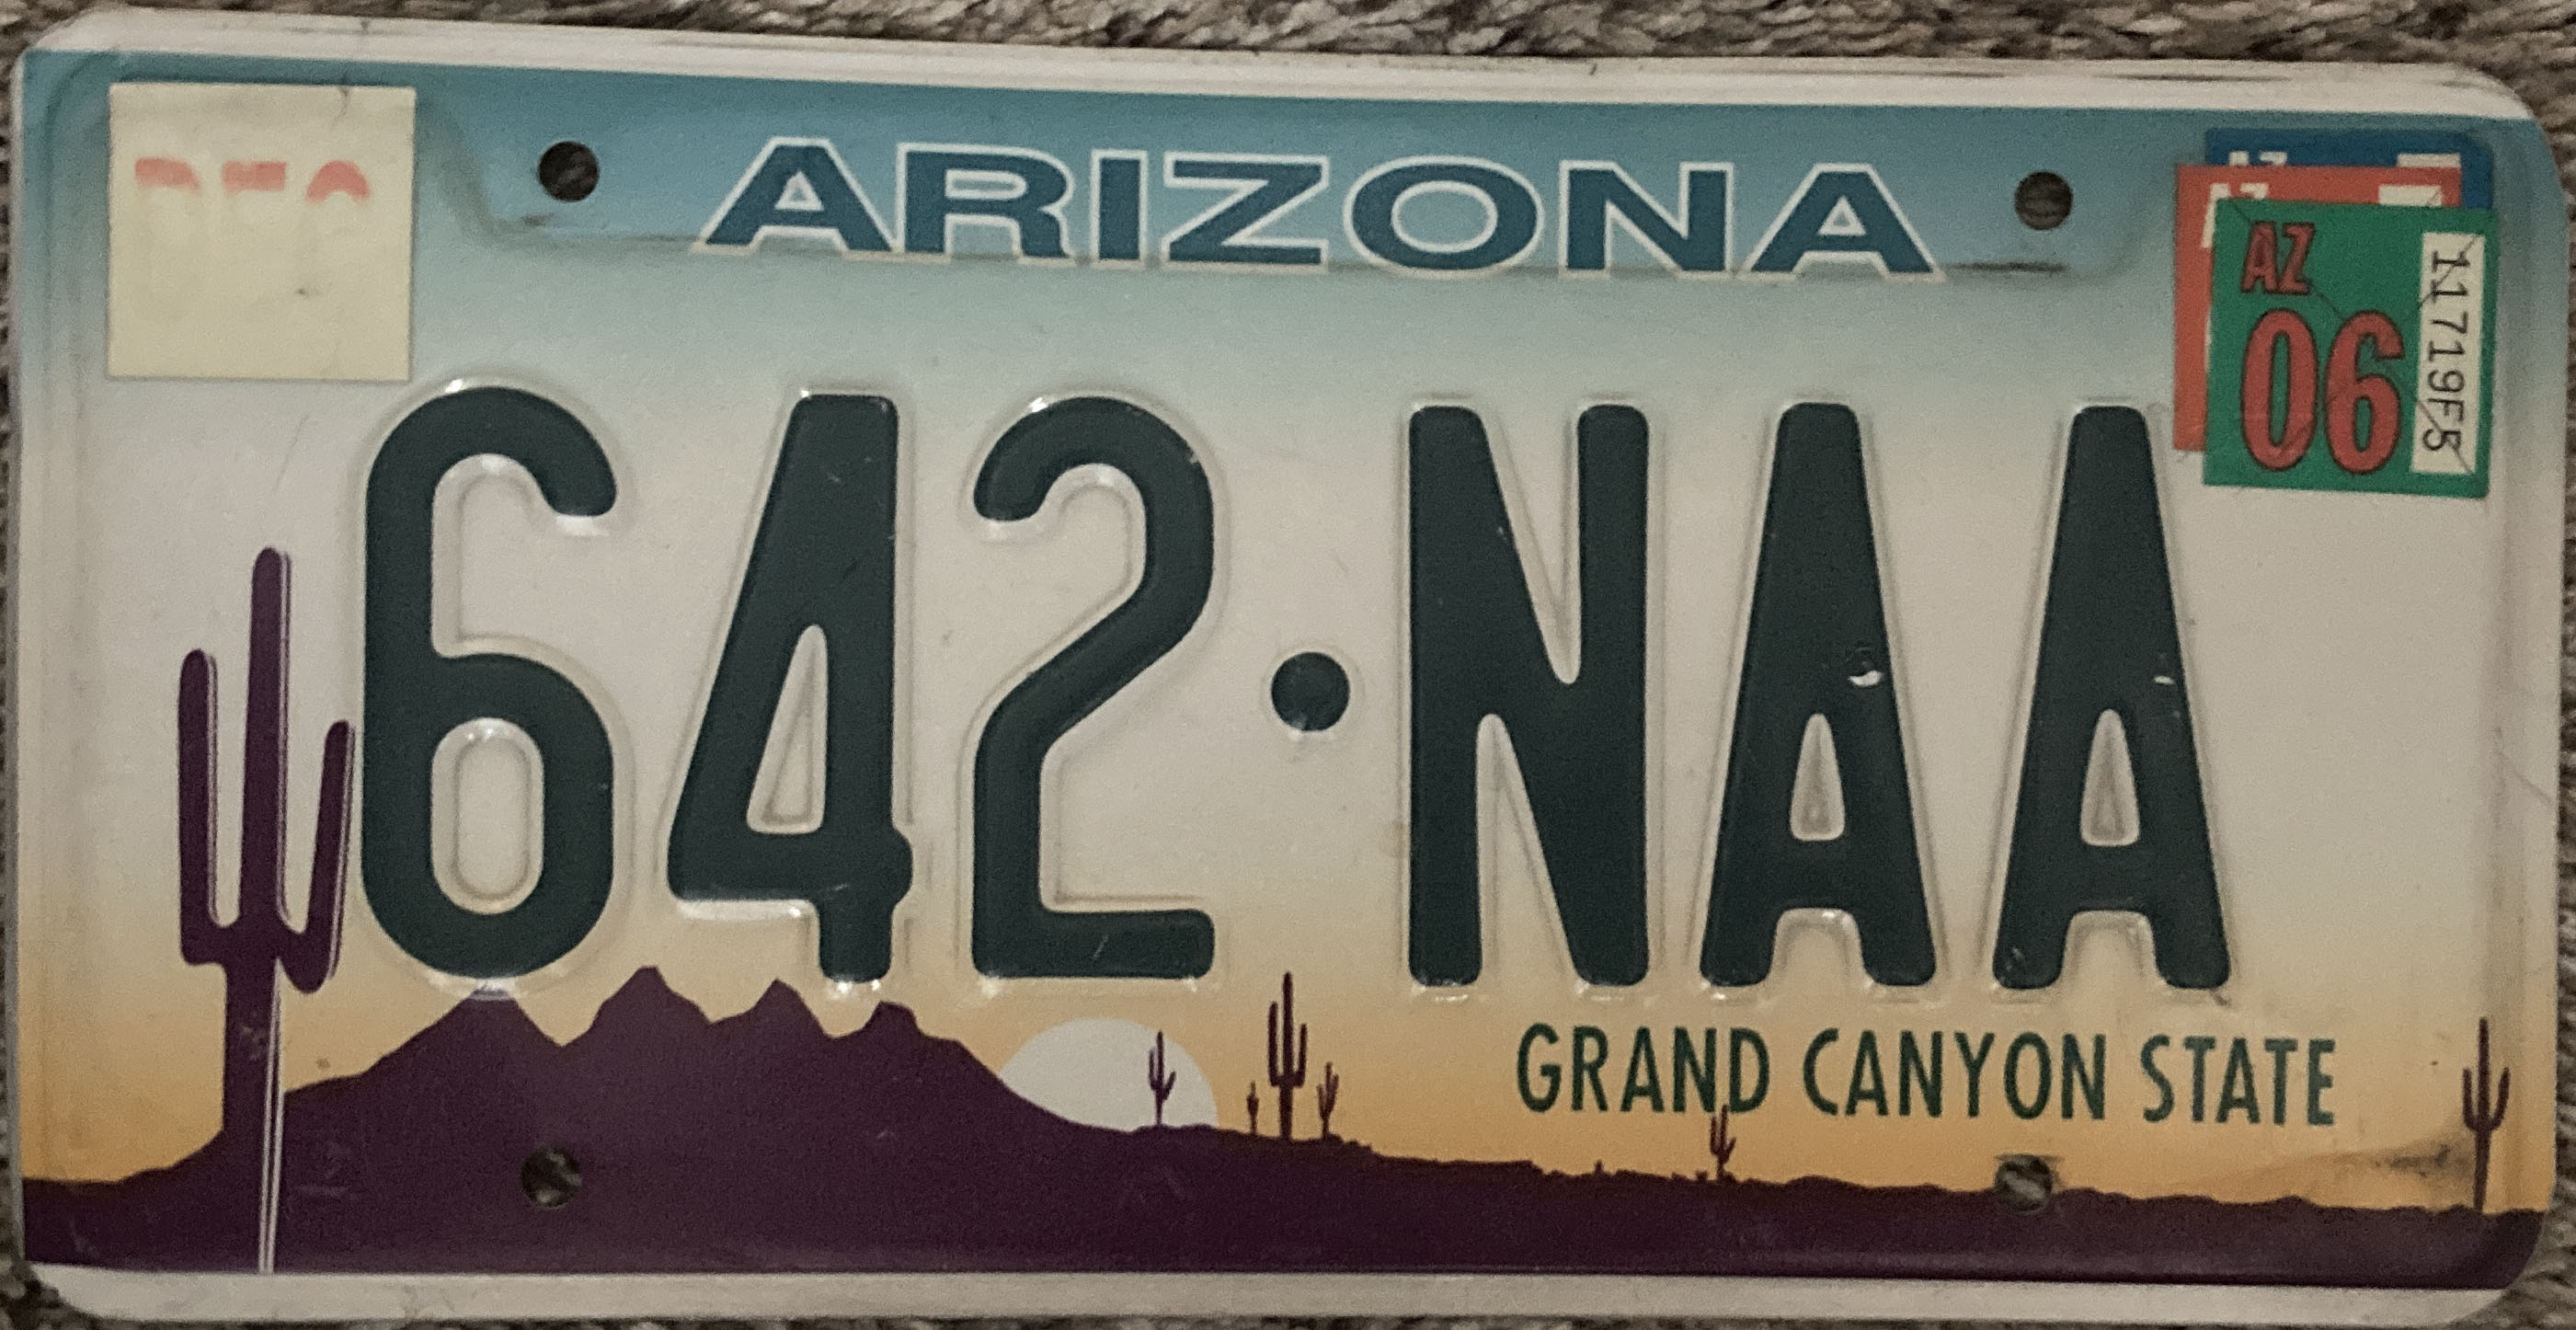 1997 Arizona US Plate